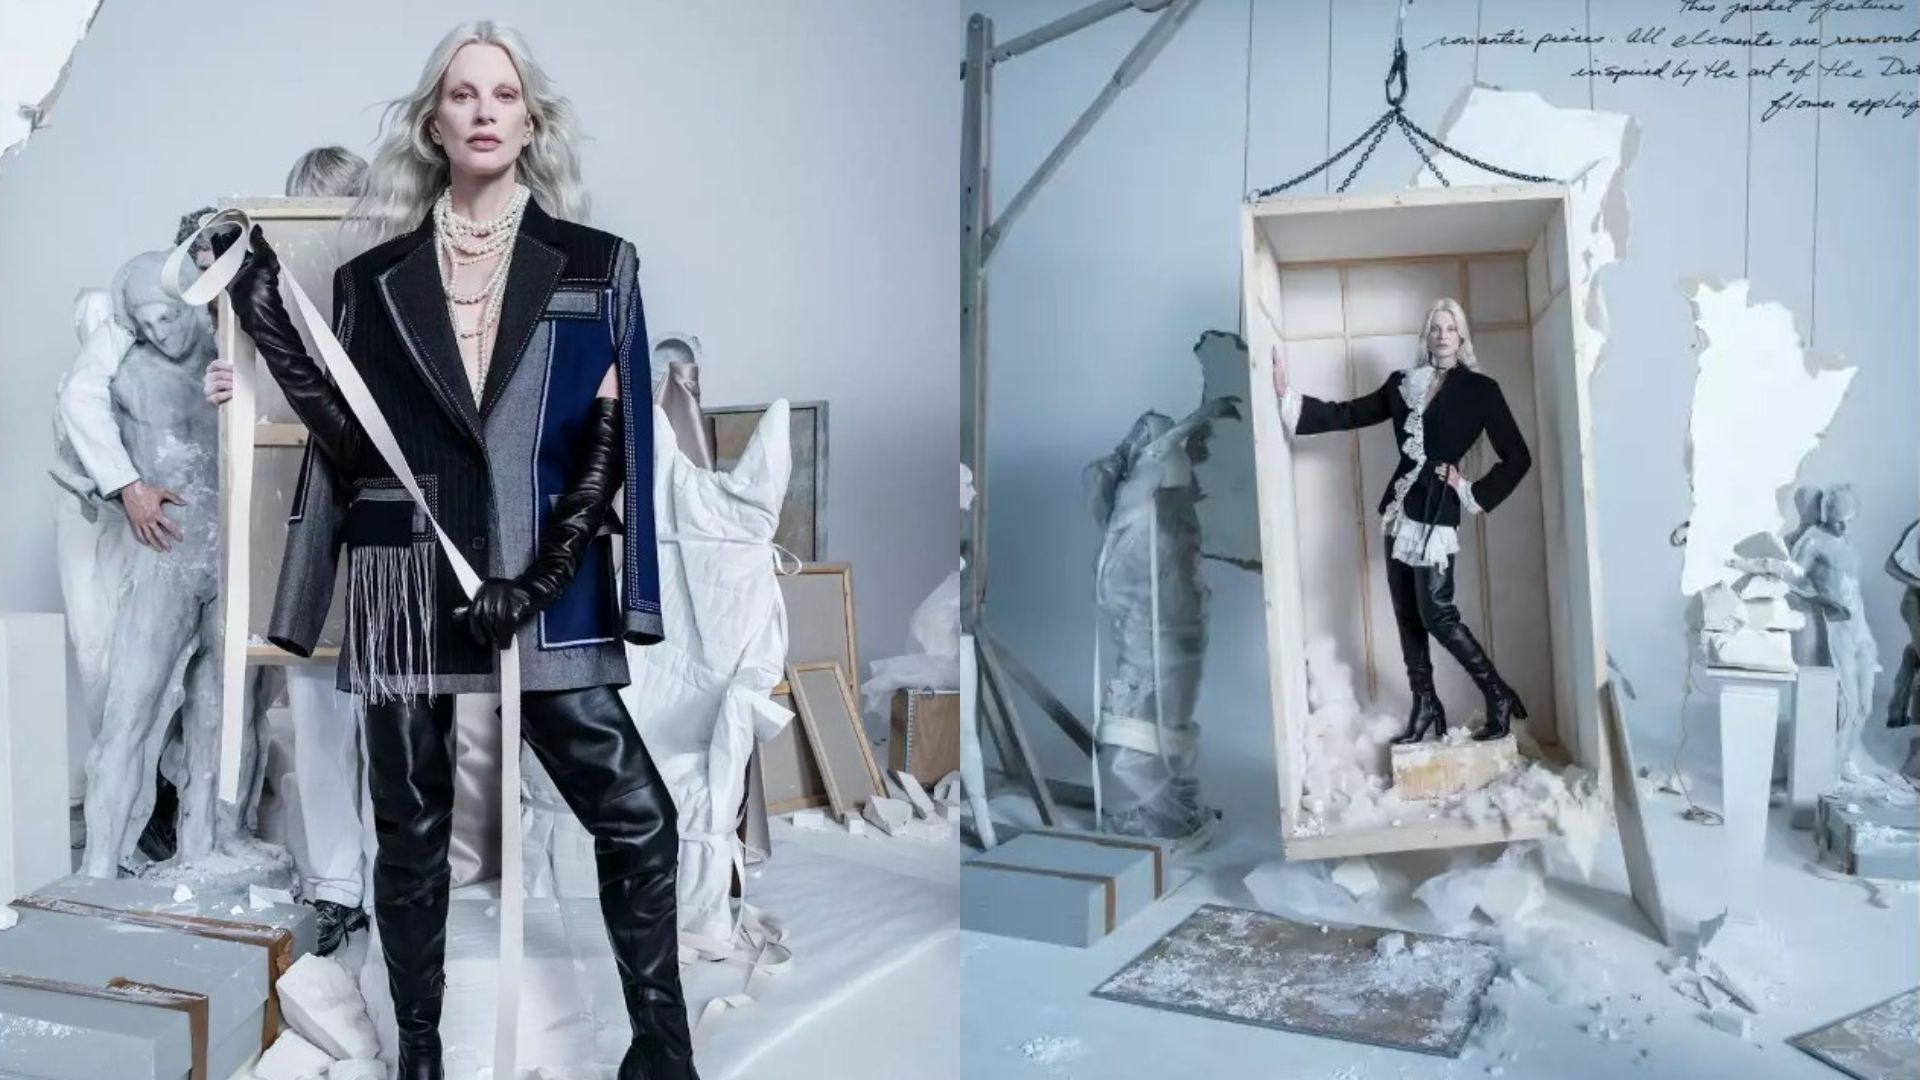 La multinacional española de moda Zara, que ha recibido quejas de consumidores británicos que vincularon uno de sus anuncios publicitarios con la guerra en Oriente Medio, anunció que lo ha retirado para no ofender a nadie, pero a la vez señaló que la campaña 'The Jacket' fue 'malentendida'.